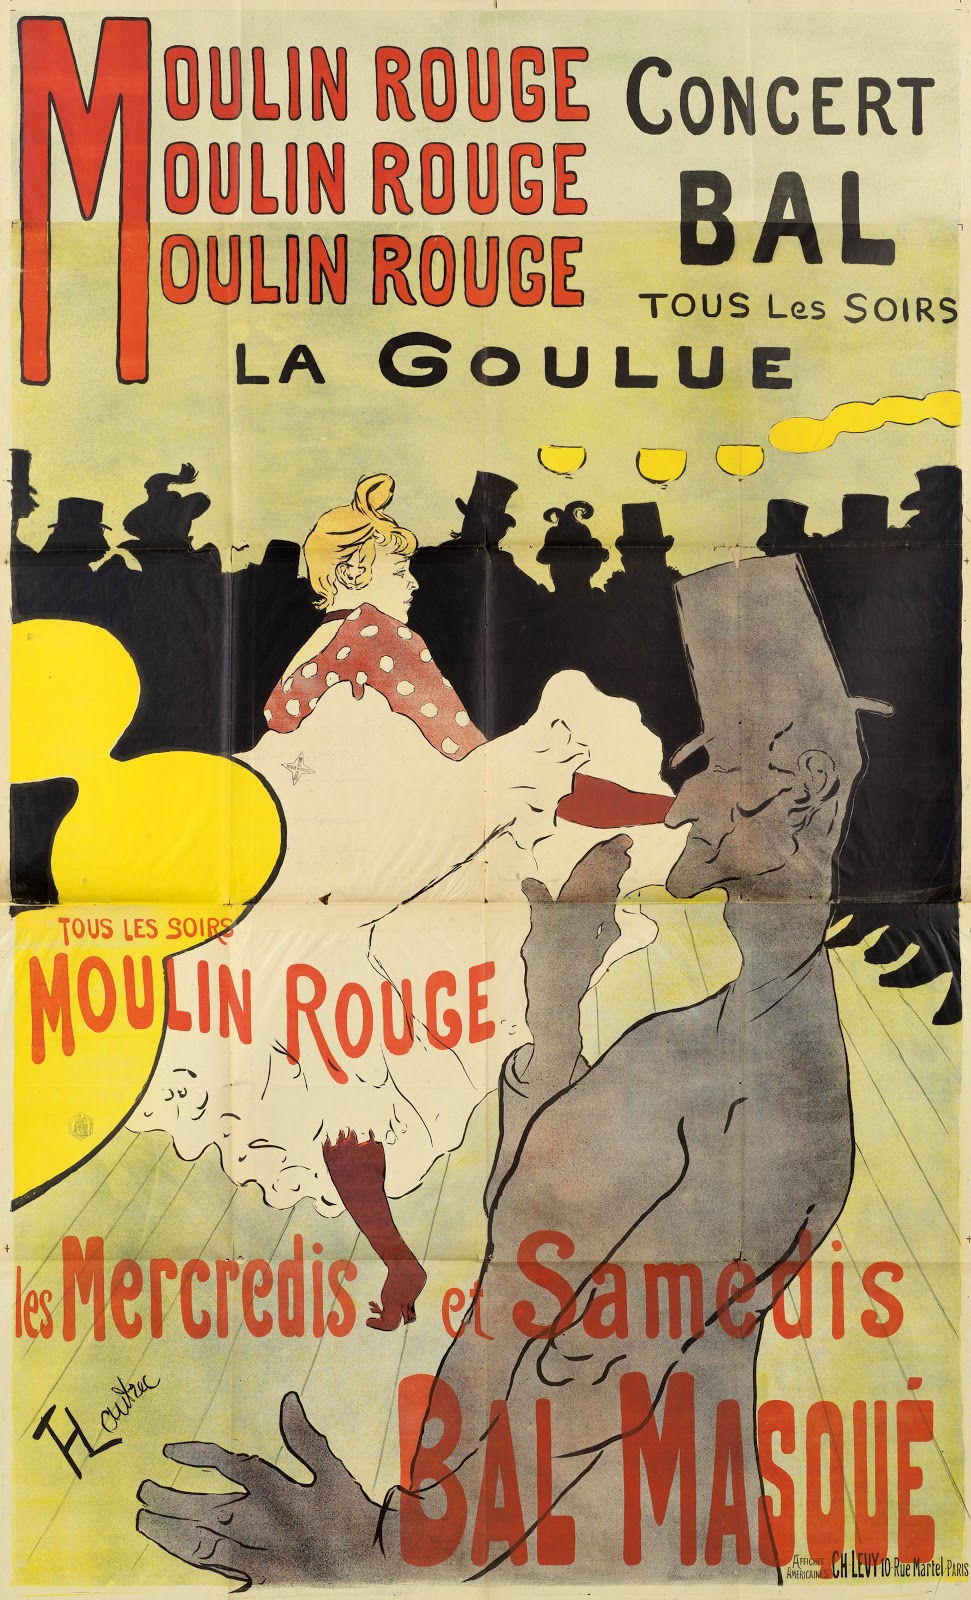 Henri+de+Toulouse+Lautrec-1864-1901 (95).jpg